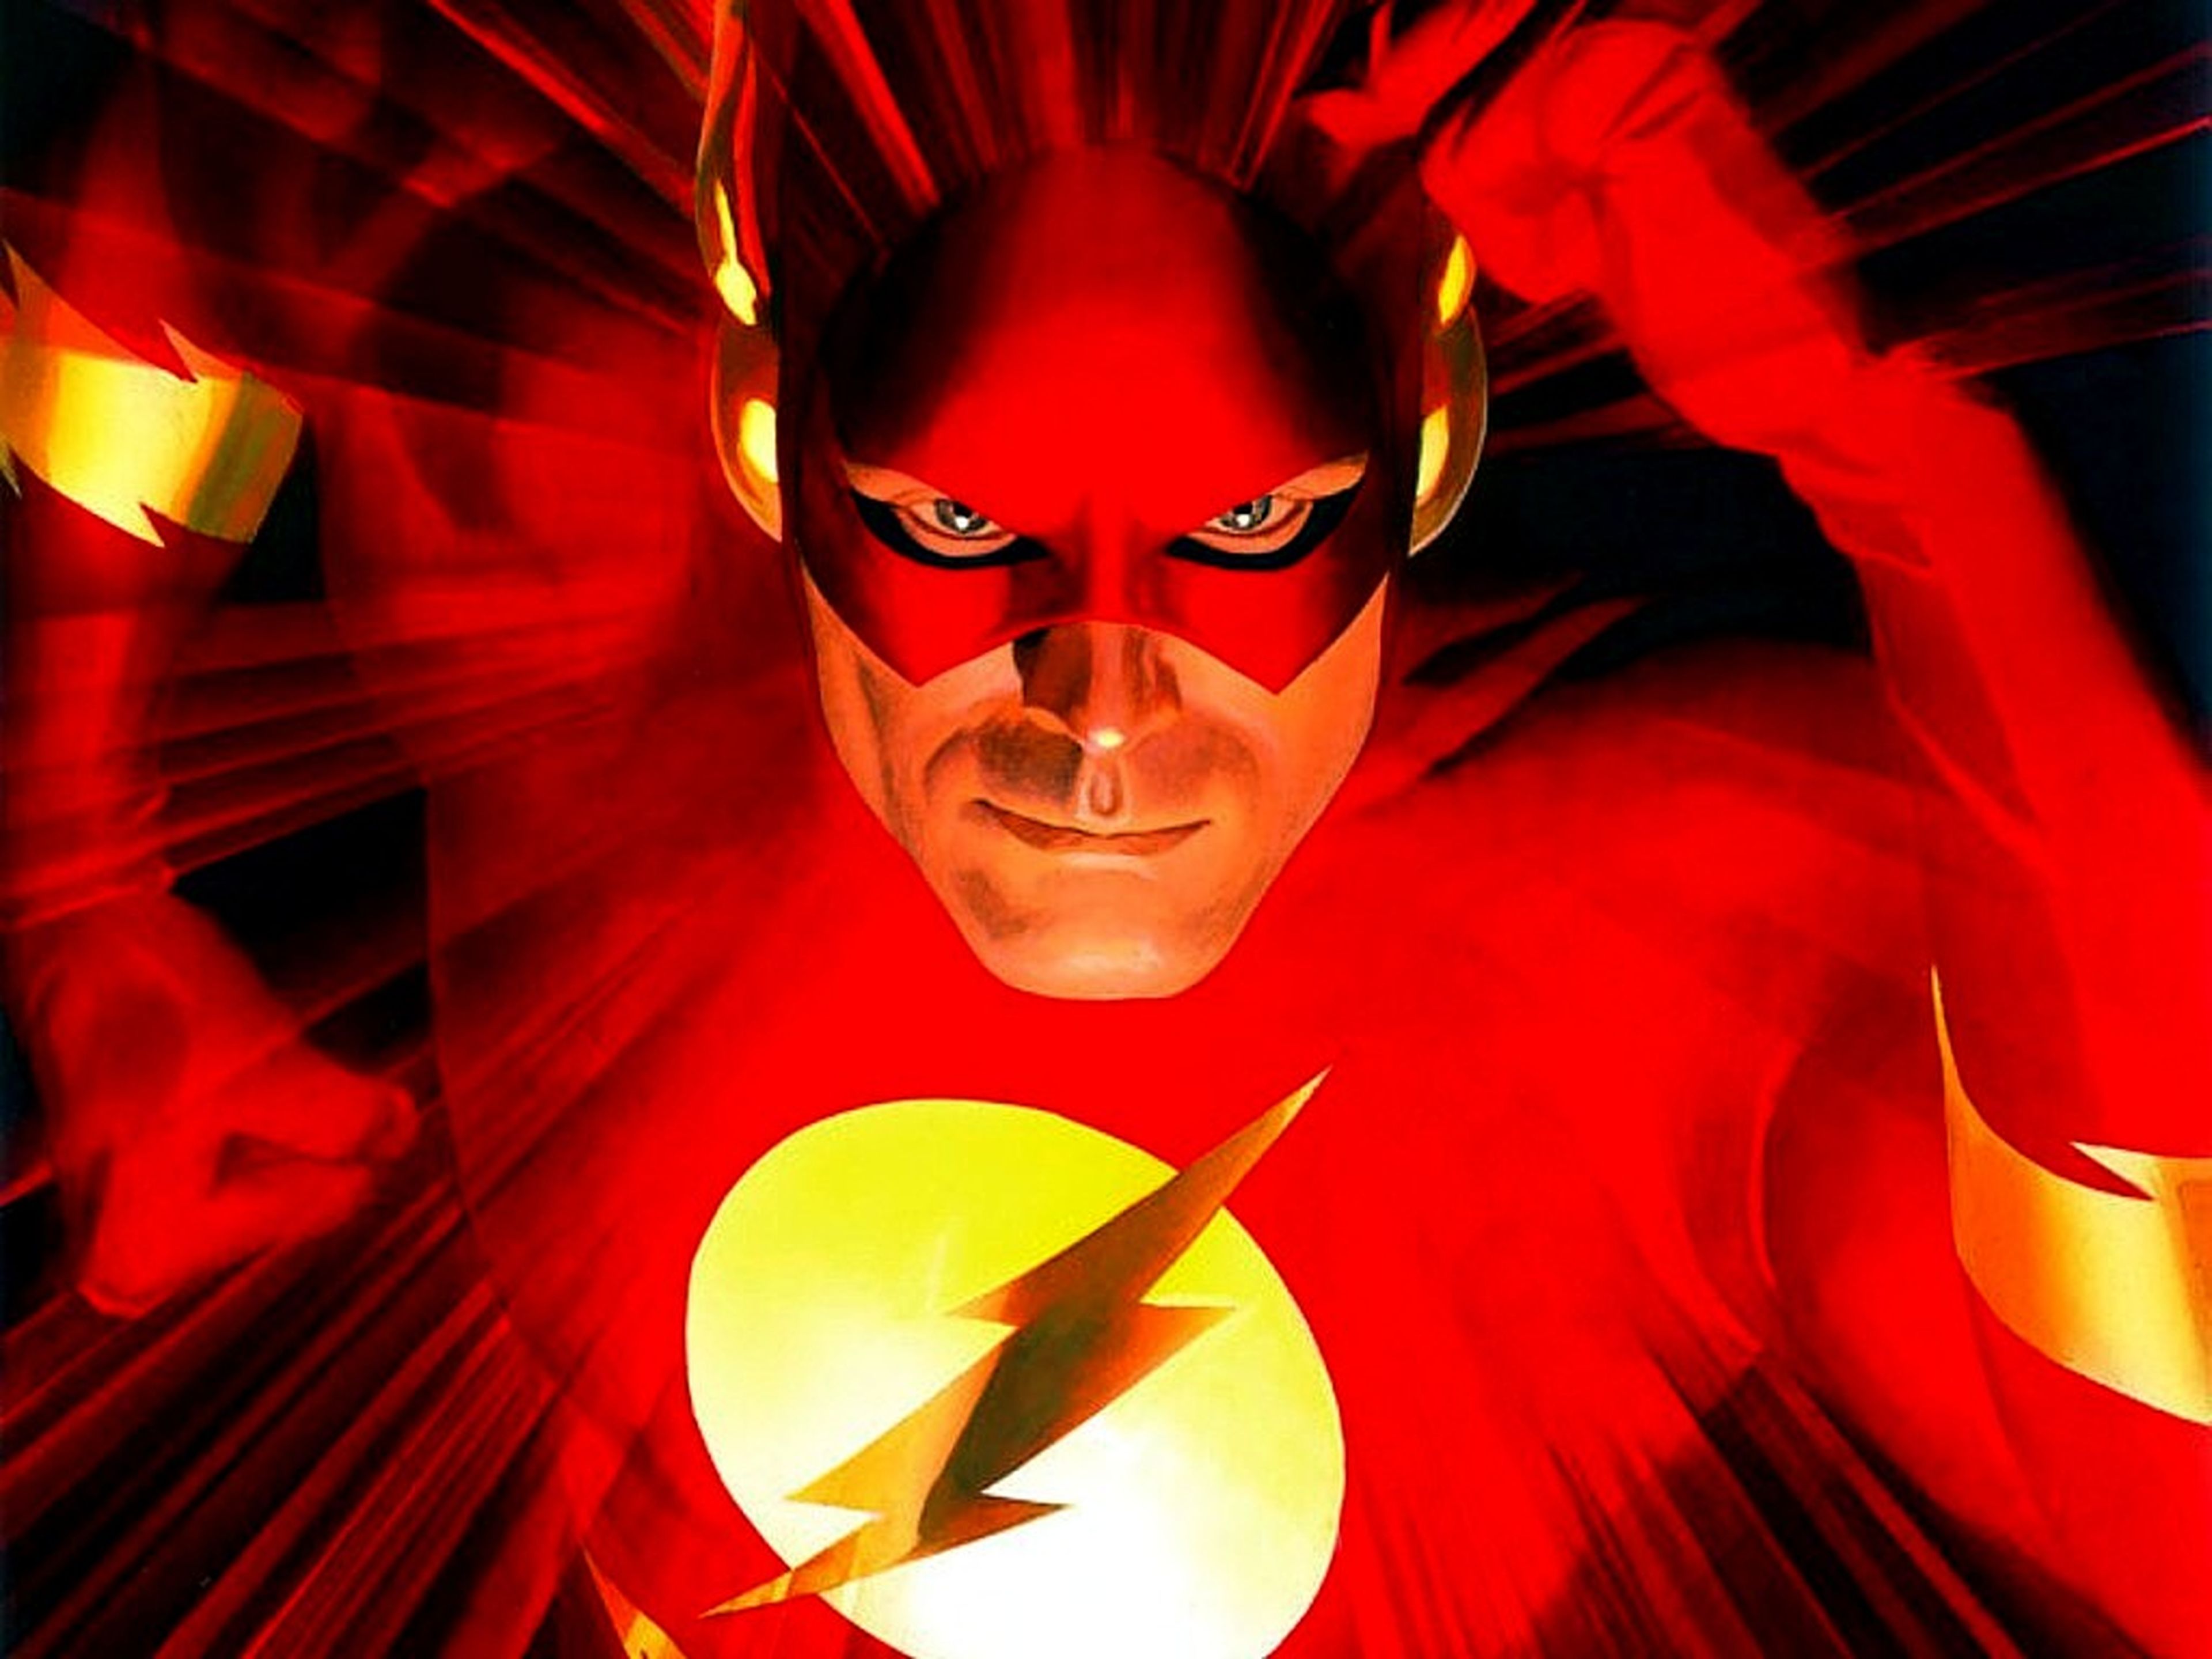 Grant Gustin habla de su personaje Flash en Arrow